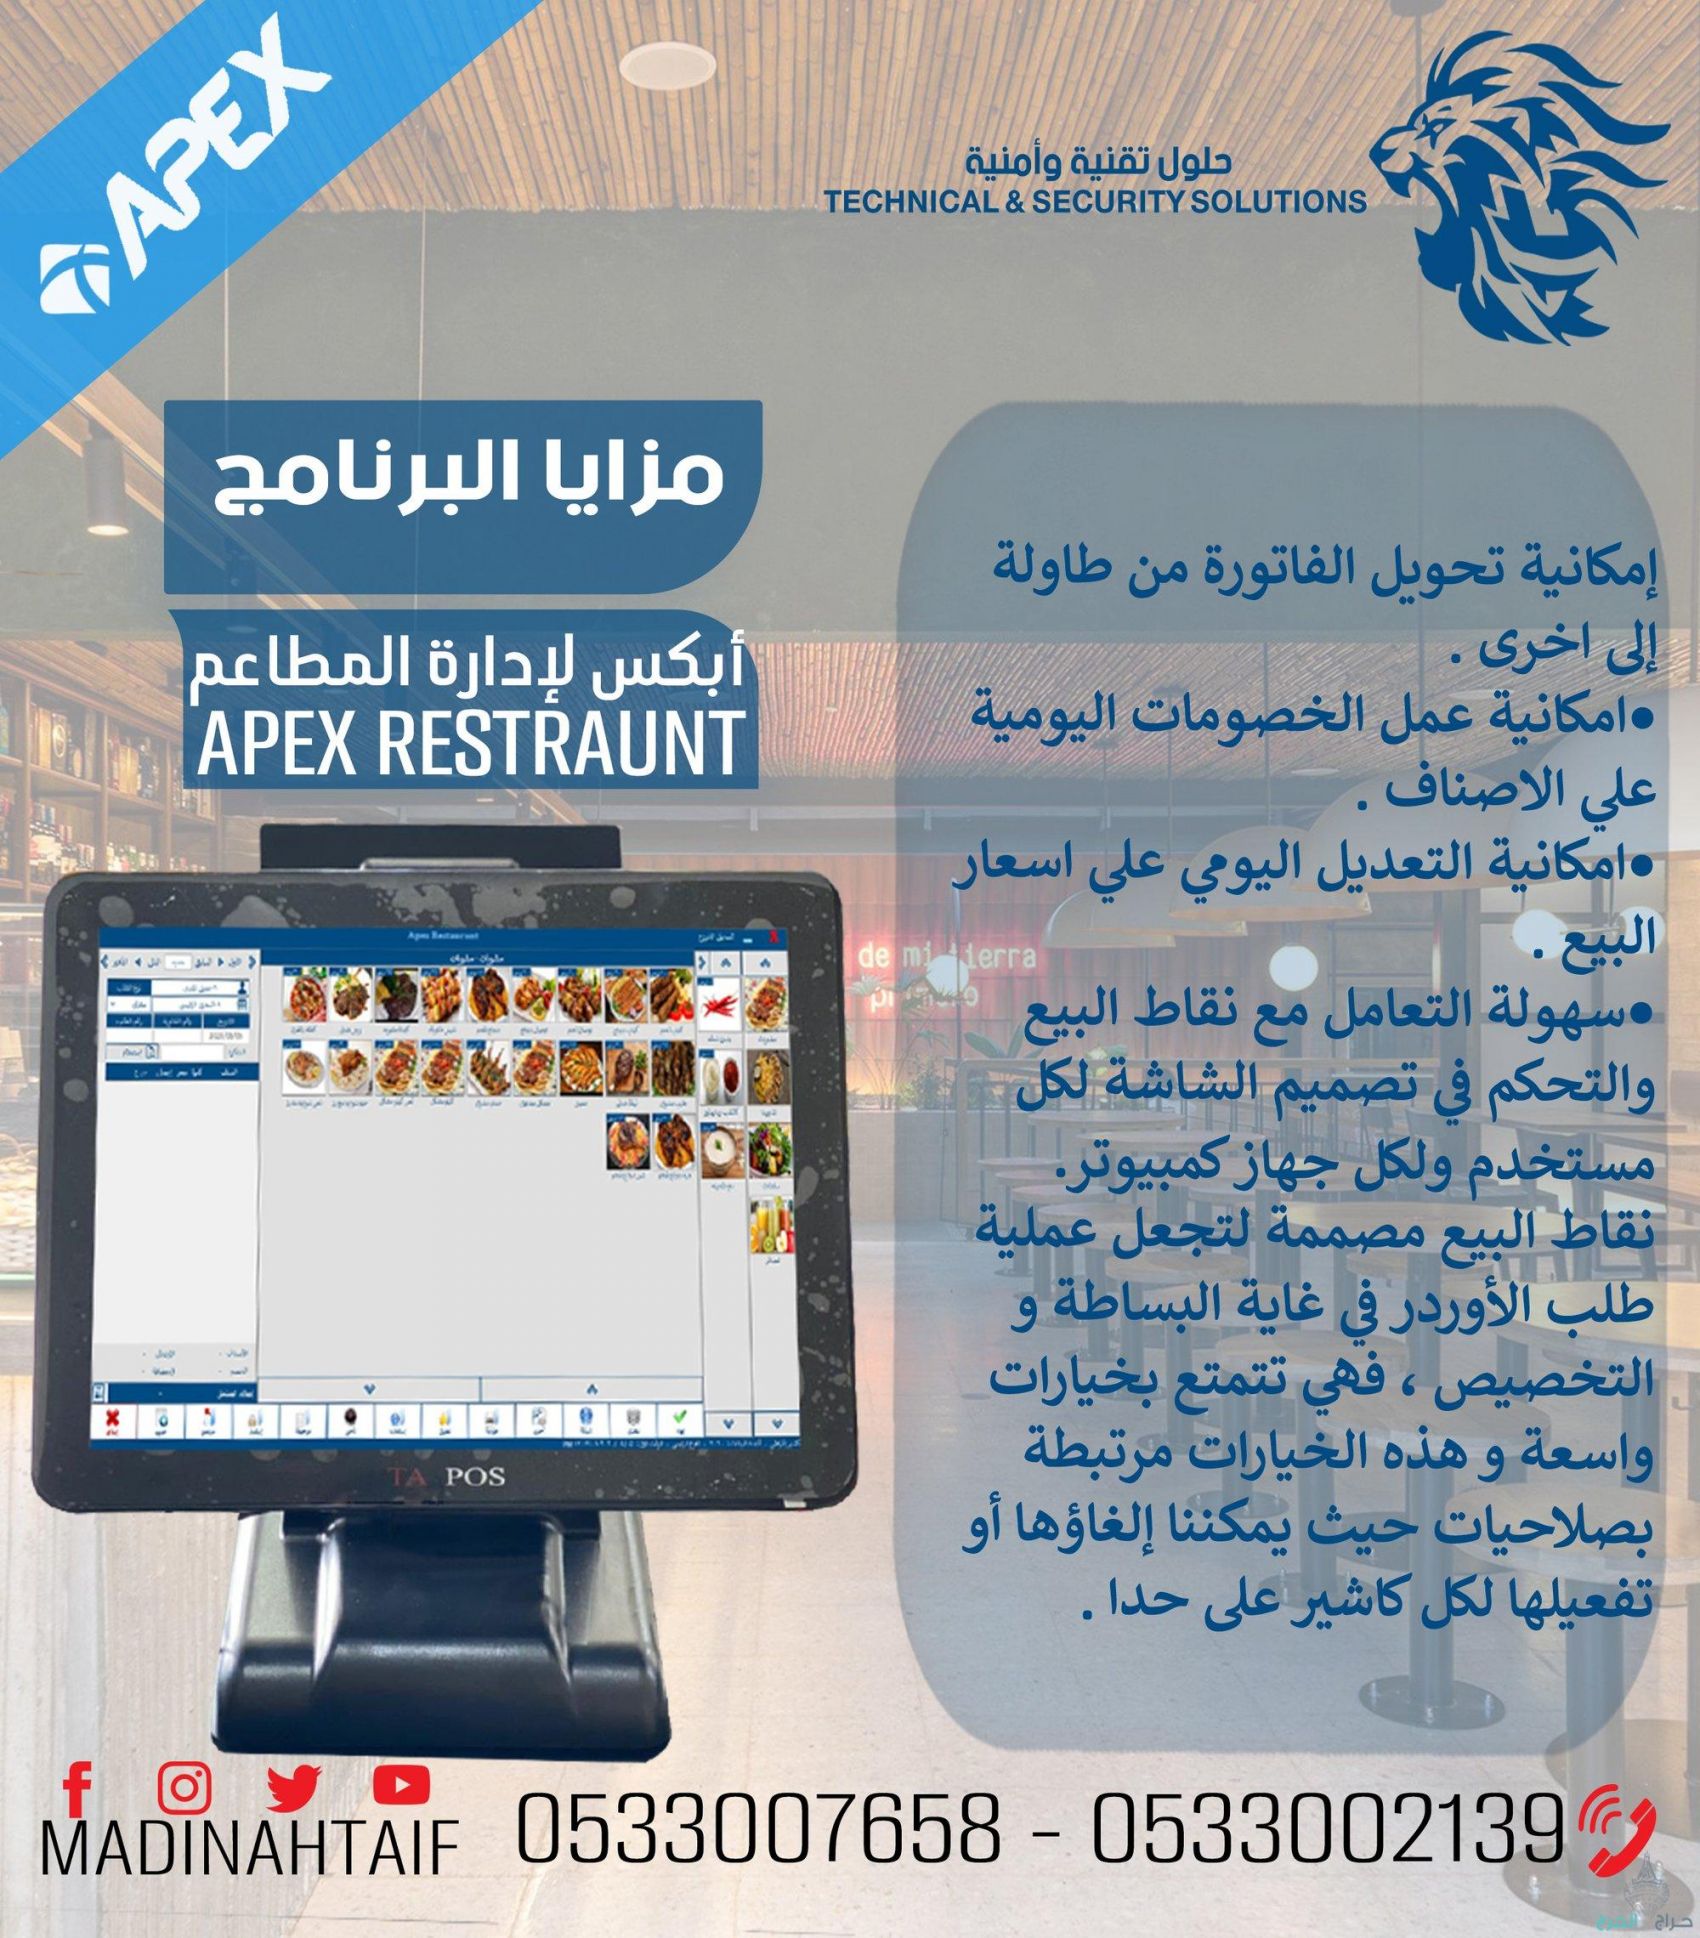 ارخص جهاز كاشير في المملكة مع برنامج معتمد ويدعم الفاتورة الالكترونية casher for store